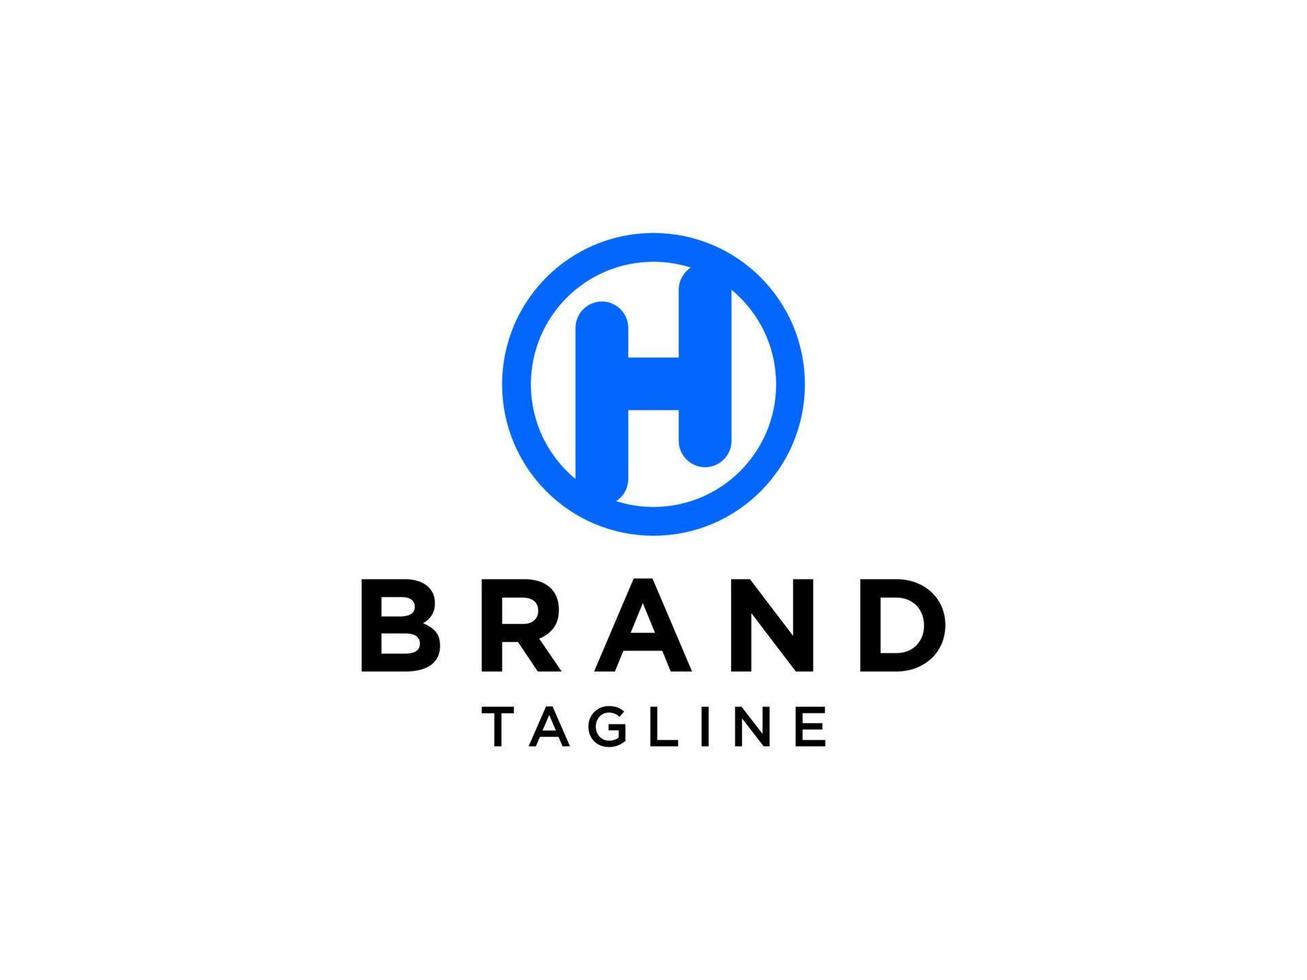 logotipo abstracto de la letra h inicial. estilo origami de forma azul aislado sobre fondo blanco. elemento de plantilla de diseño de logotipo de vector plano para logotipos de negocios, tecnología y marca